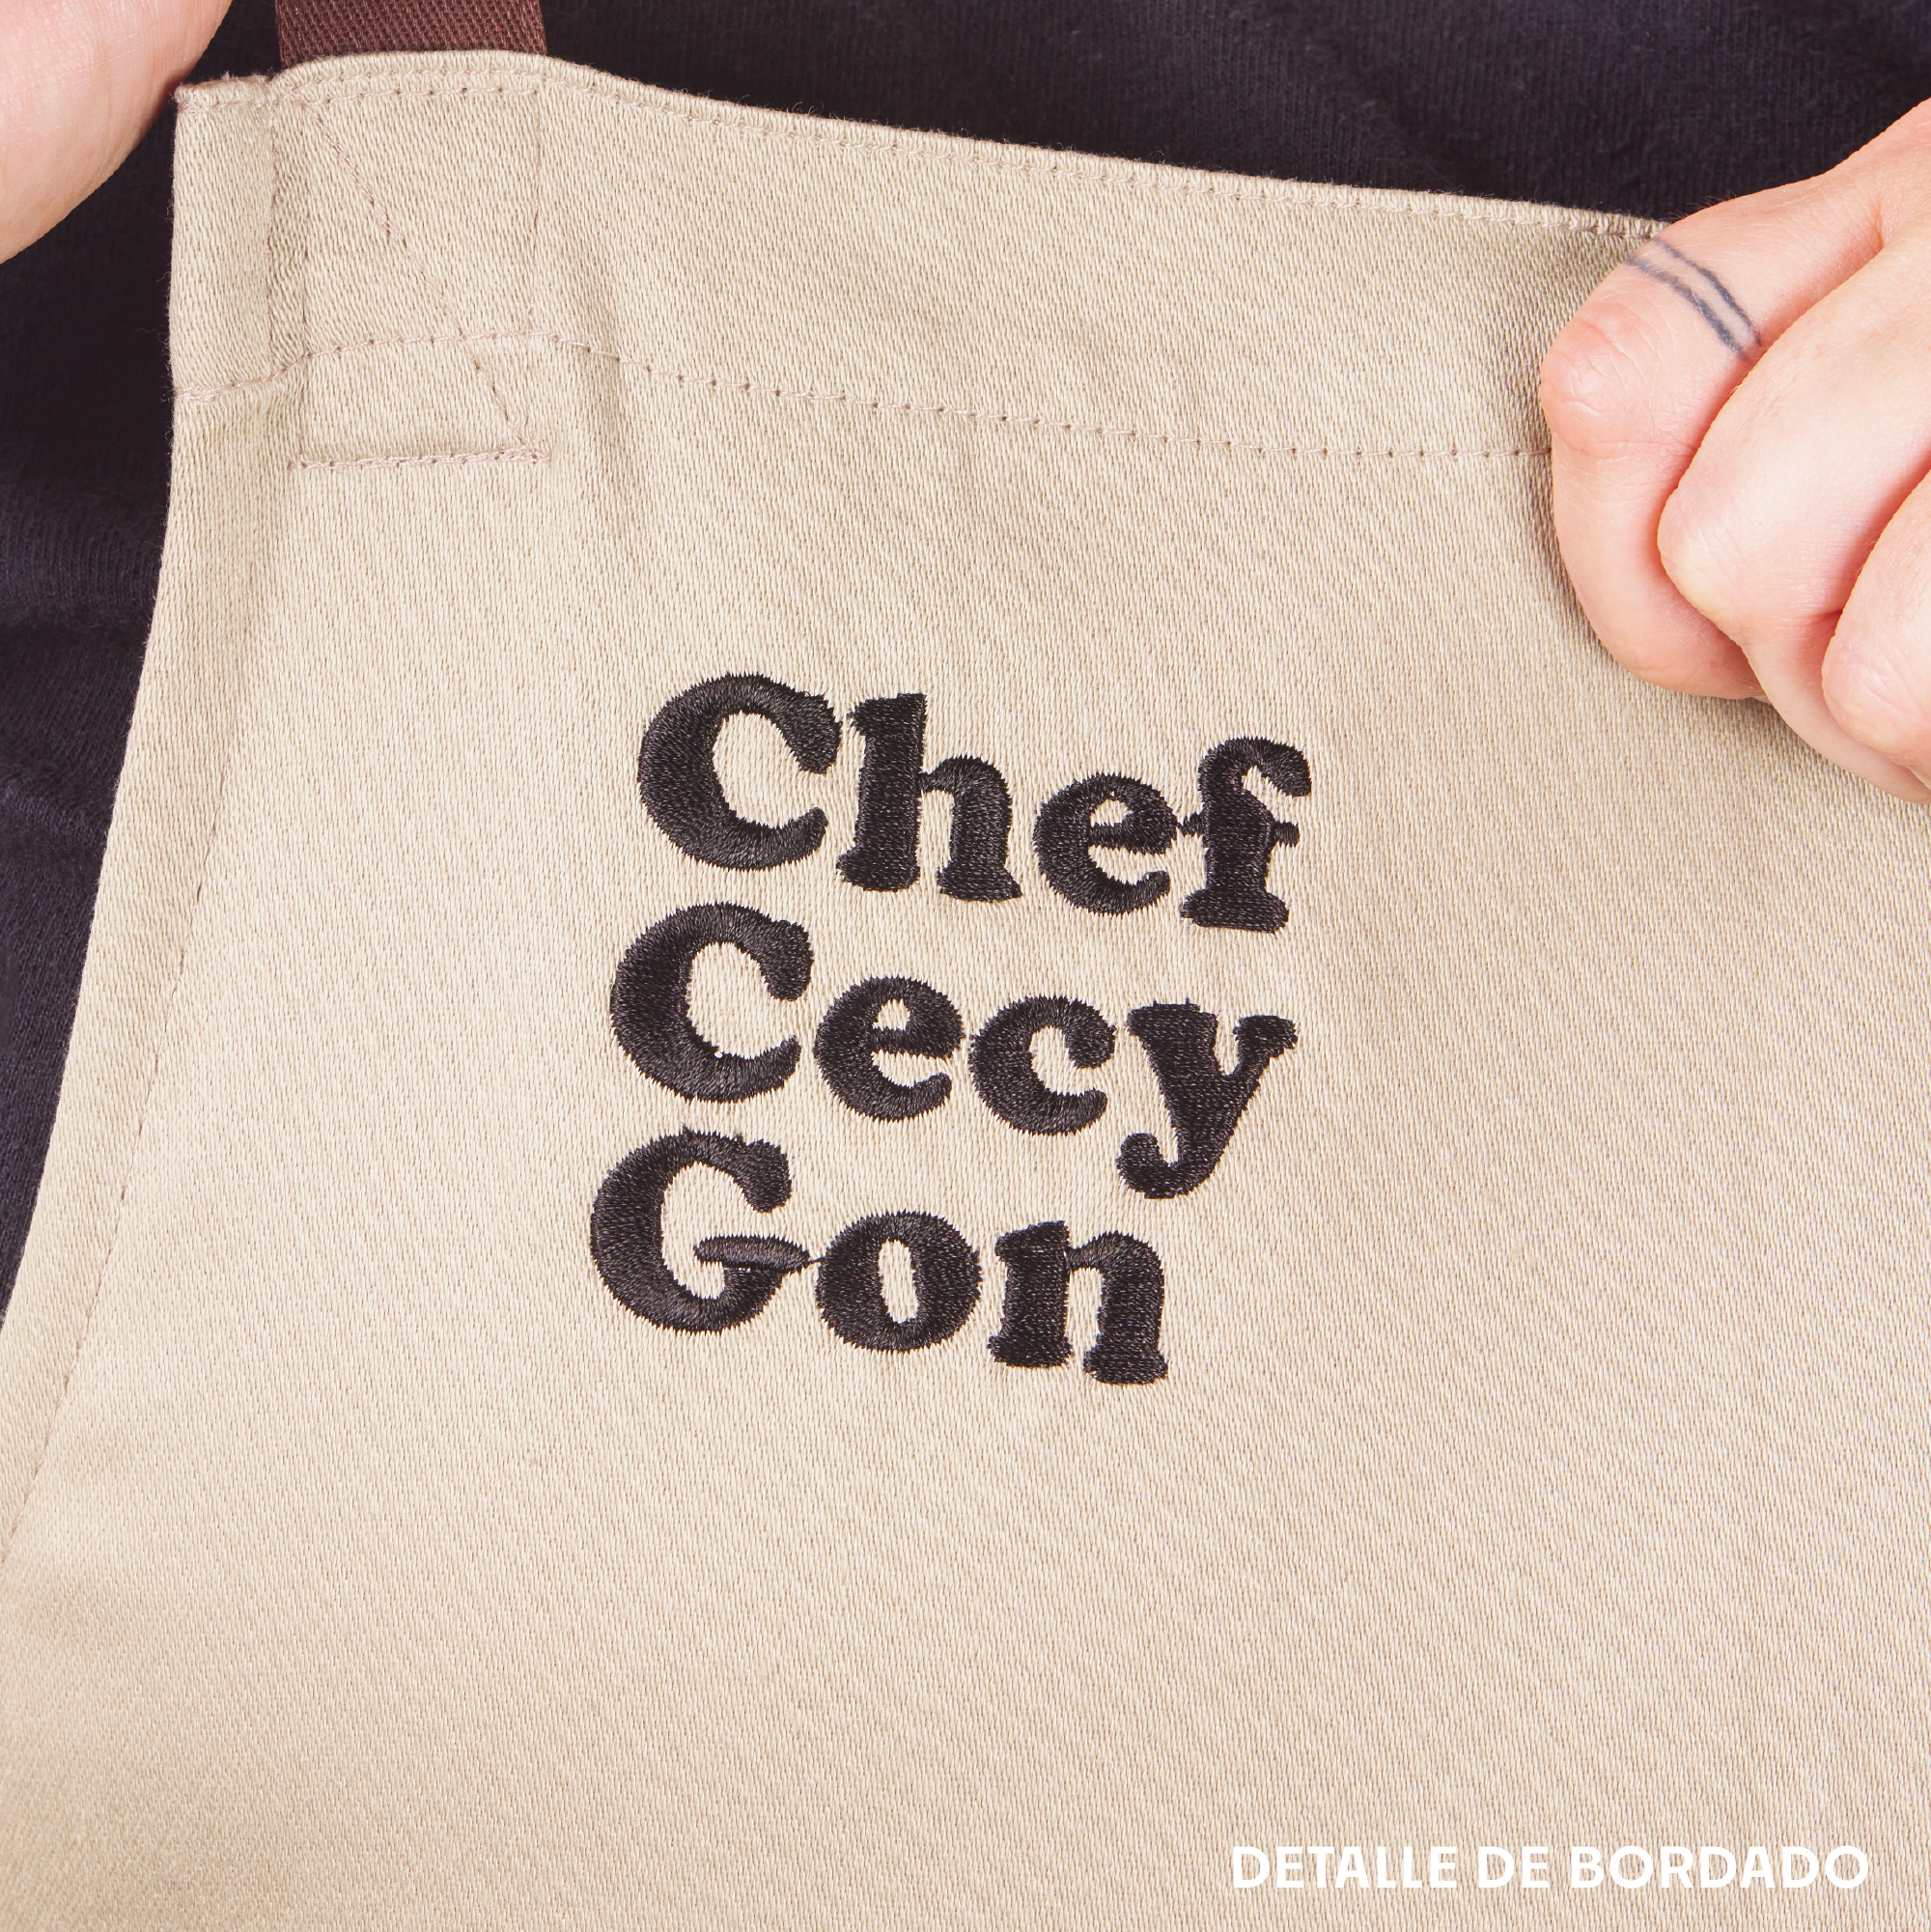 Libro Recetas Caseras un Tributo a Mamá x @ChefCecyGon – chefcecygon